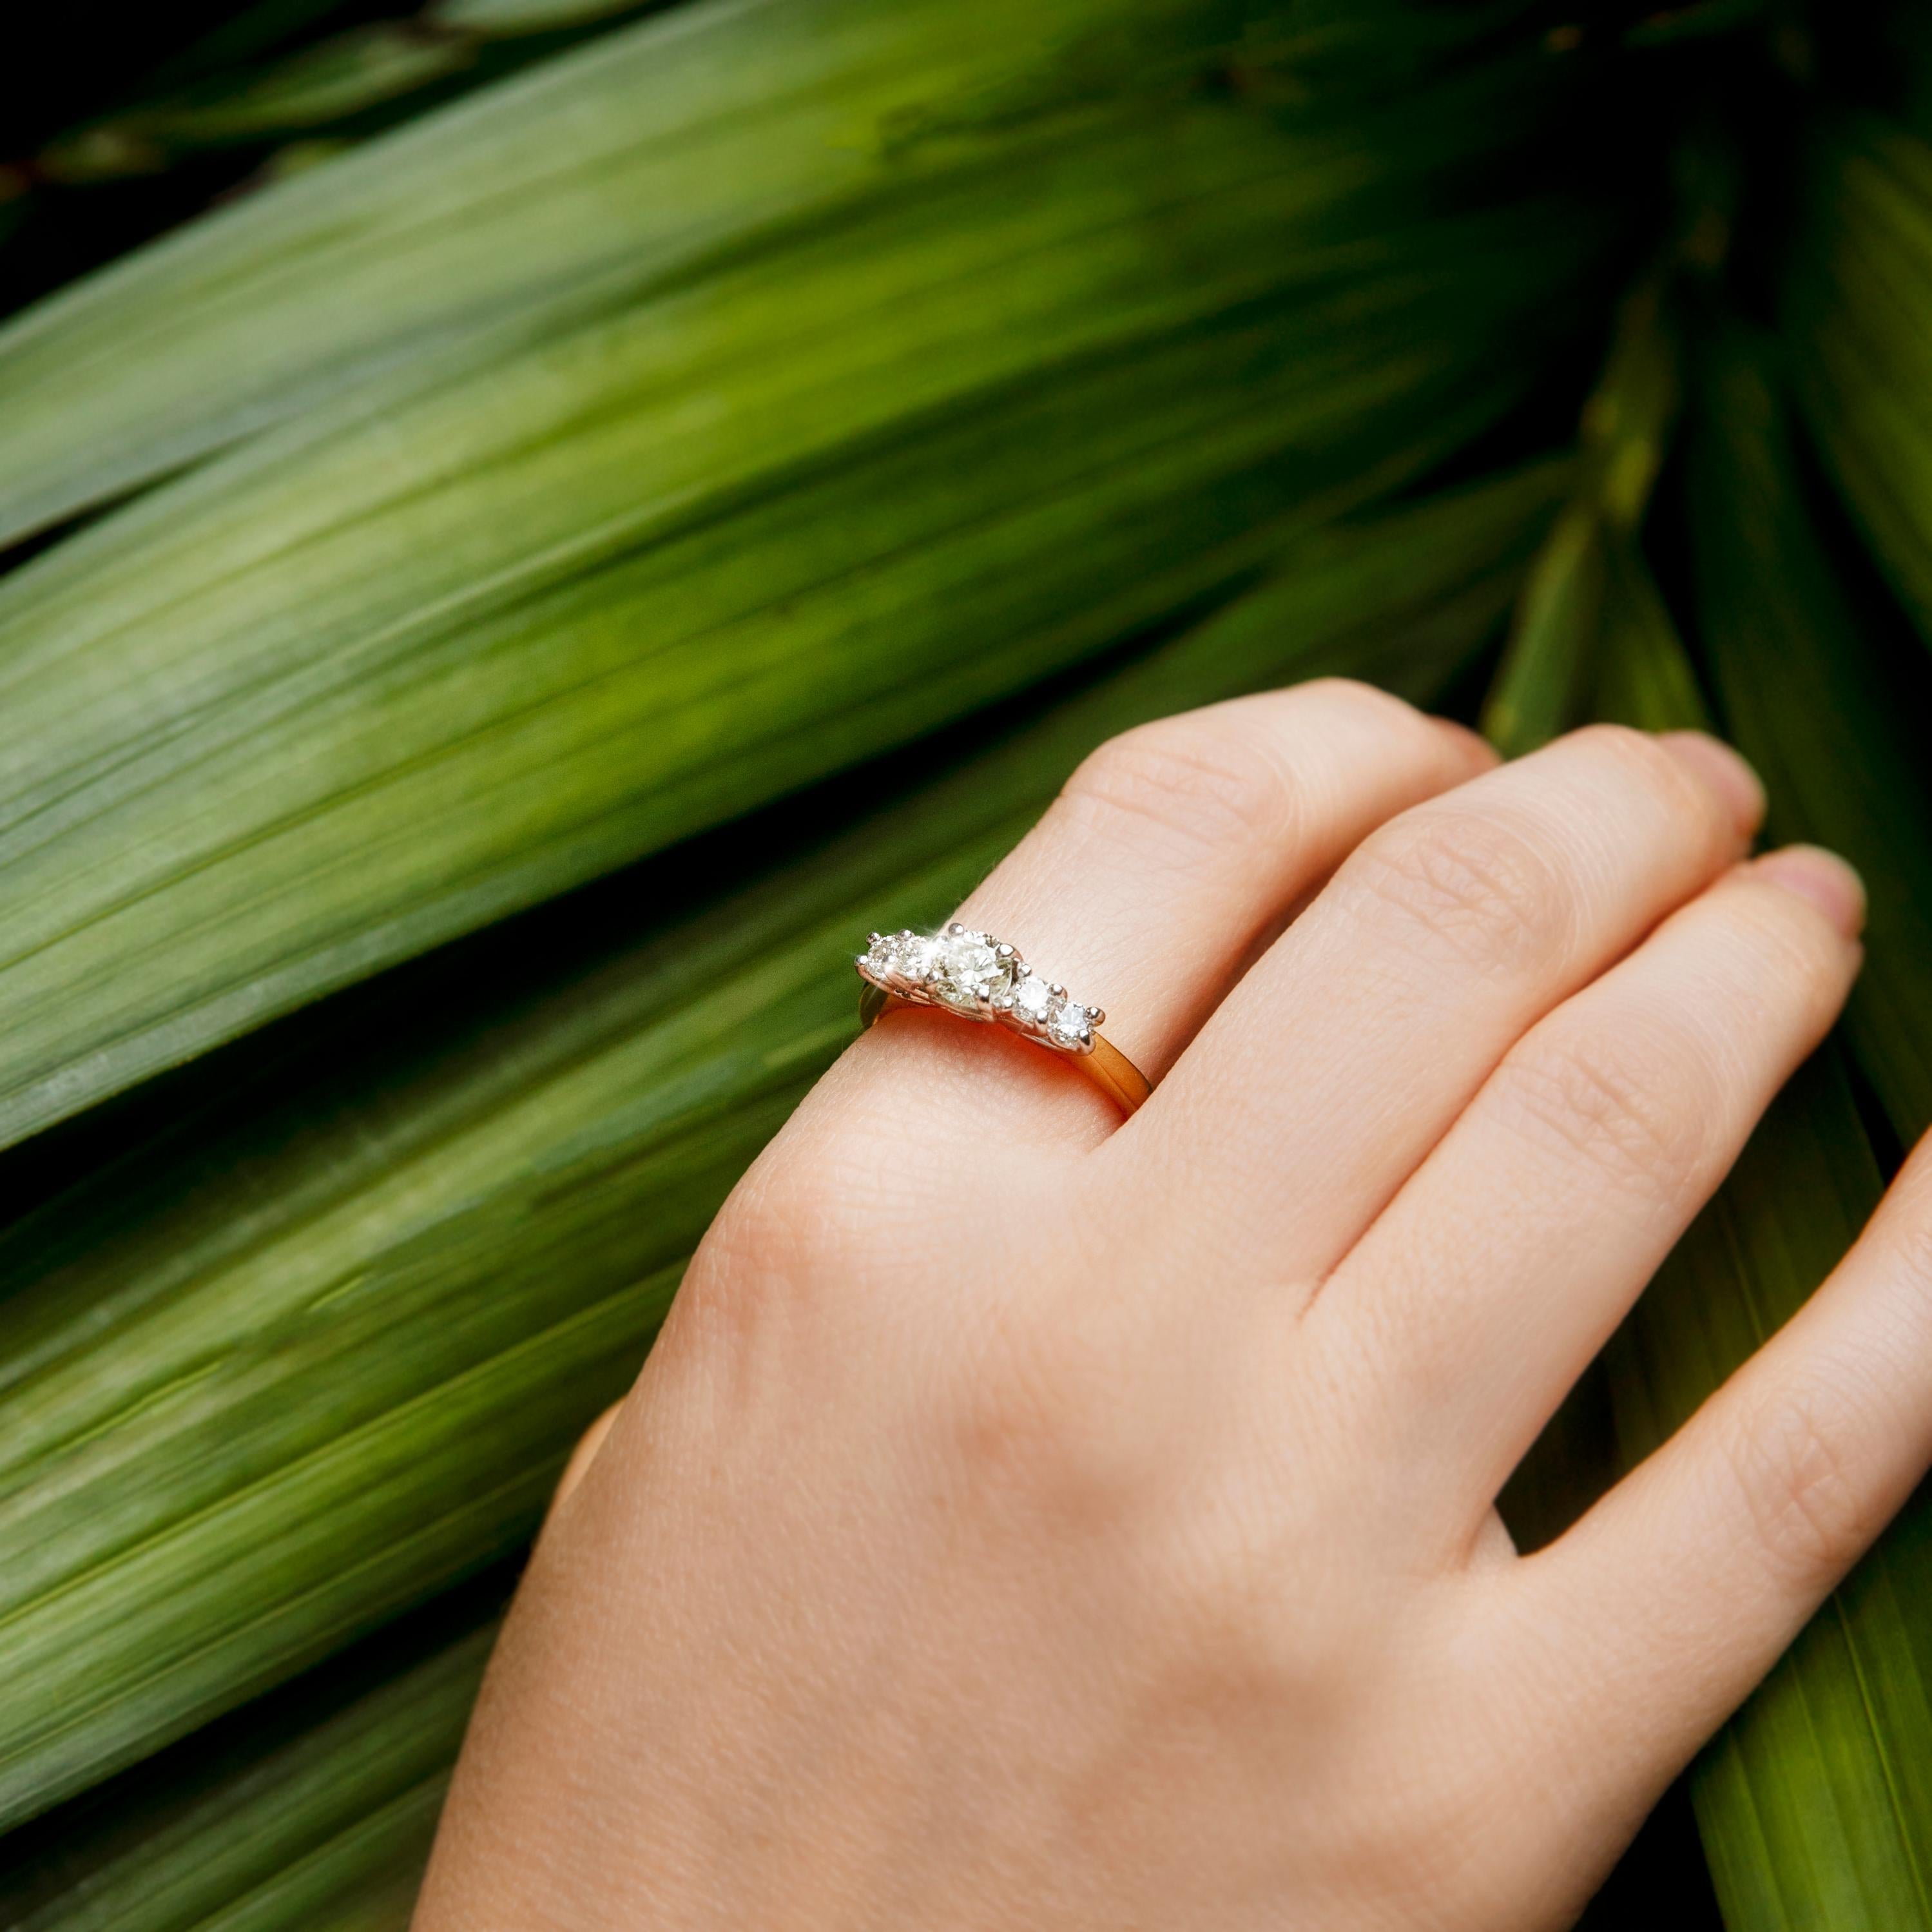 Dieser hübsche Vintage-Ring ist aus 18 Karat Gelbgold geschmiedet und zeigt fünf schimmernde runde Brillanten in einer Weißgold-Fassung im Spalierstil auf der Vorderseite des Rings. Ihr Name ist The Lilith Ring. Sie ist ein wundervoller Ring für